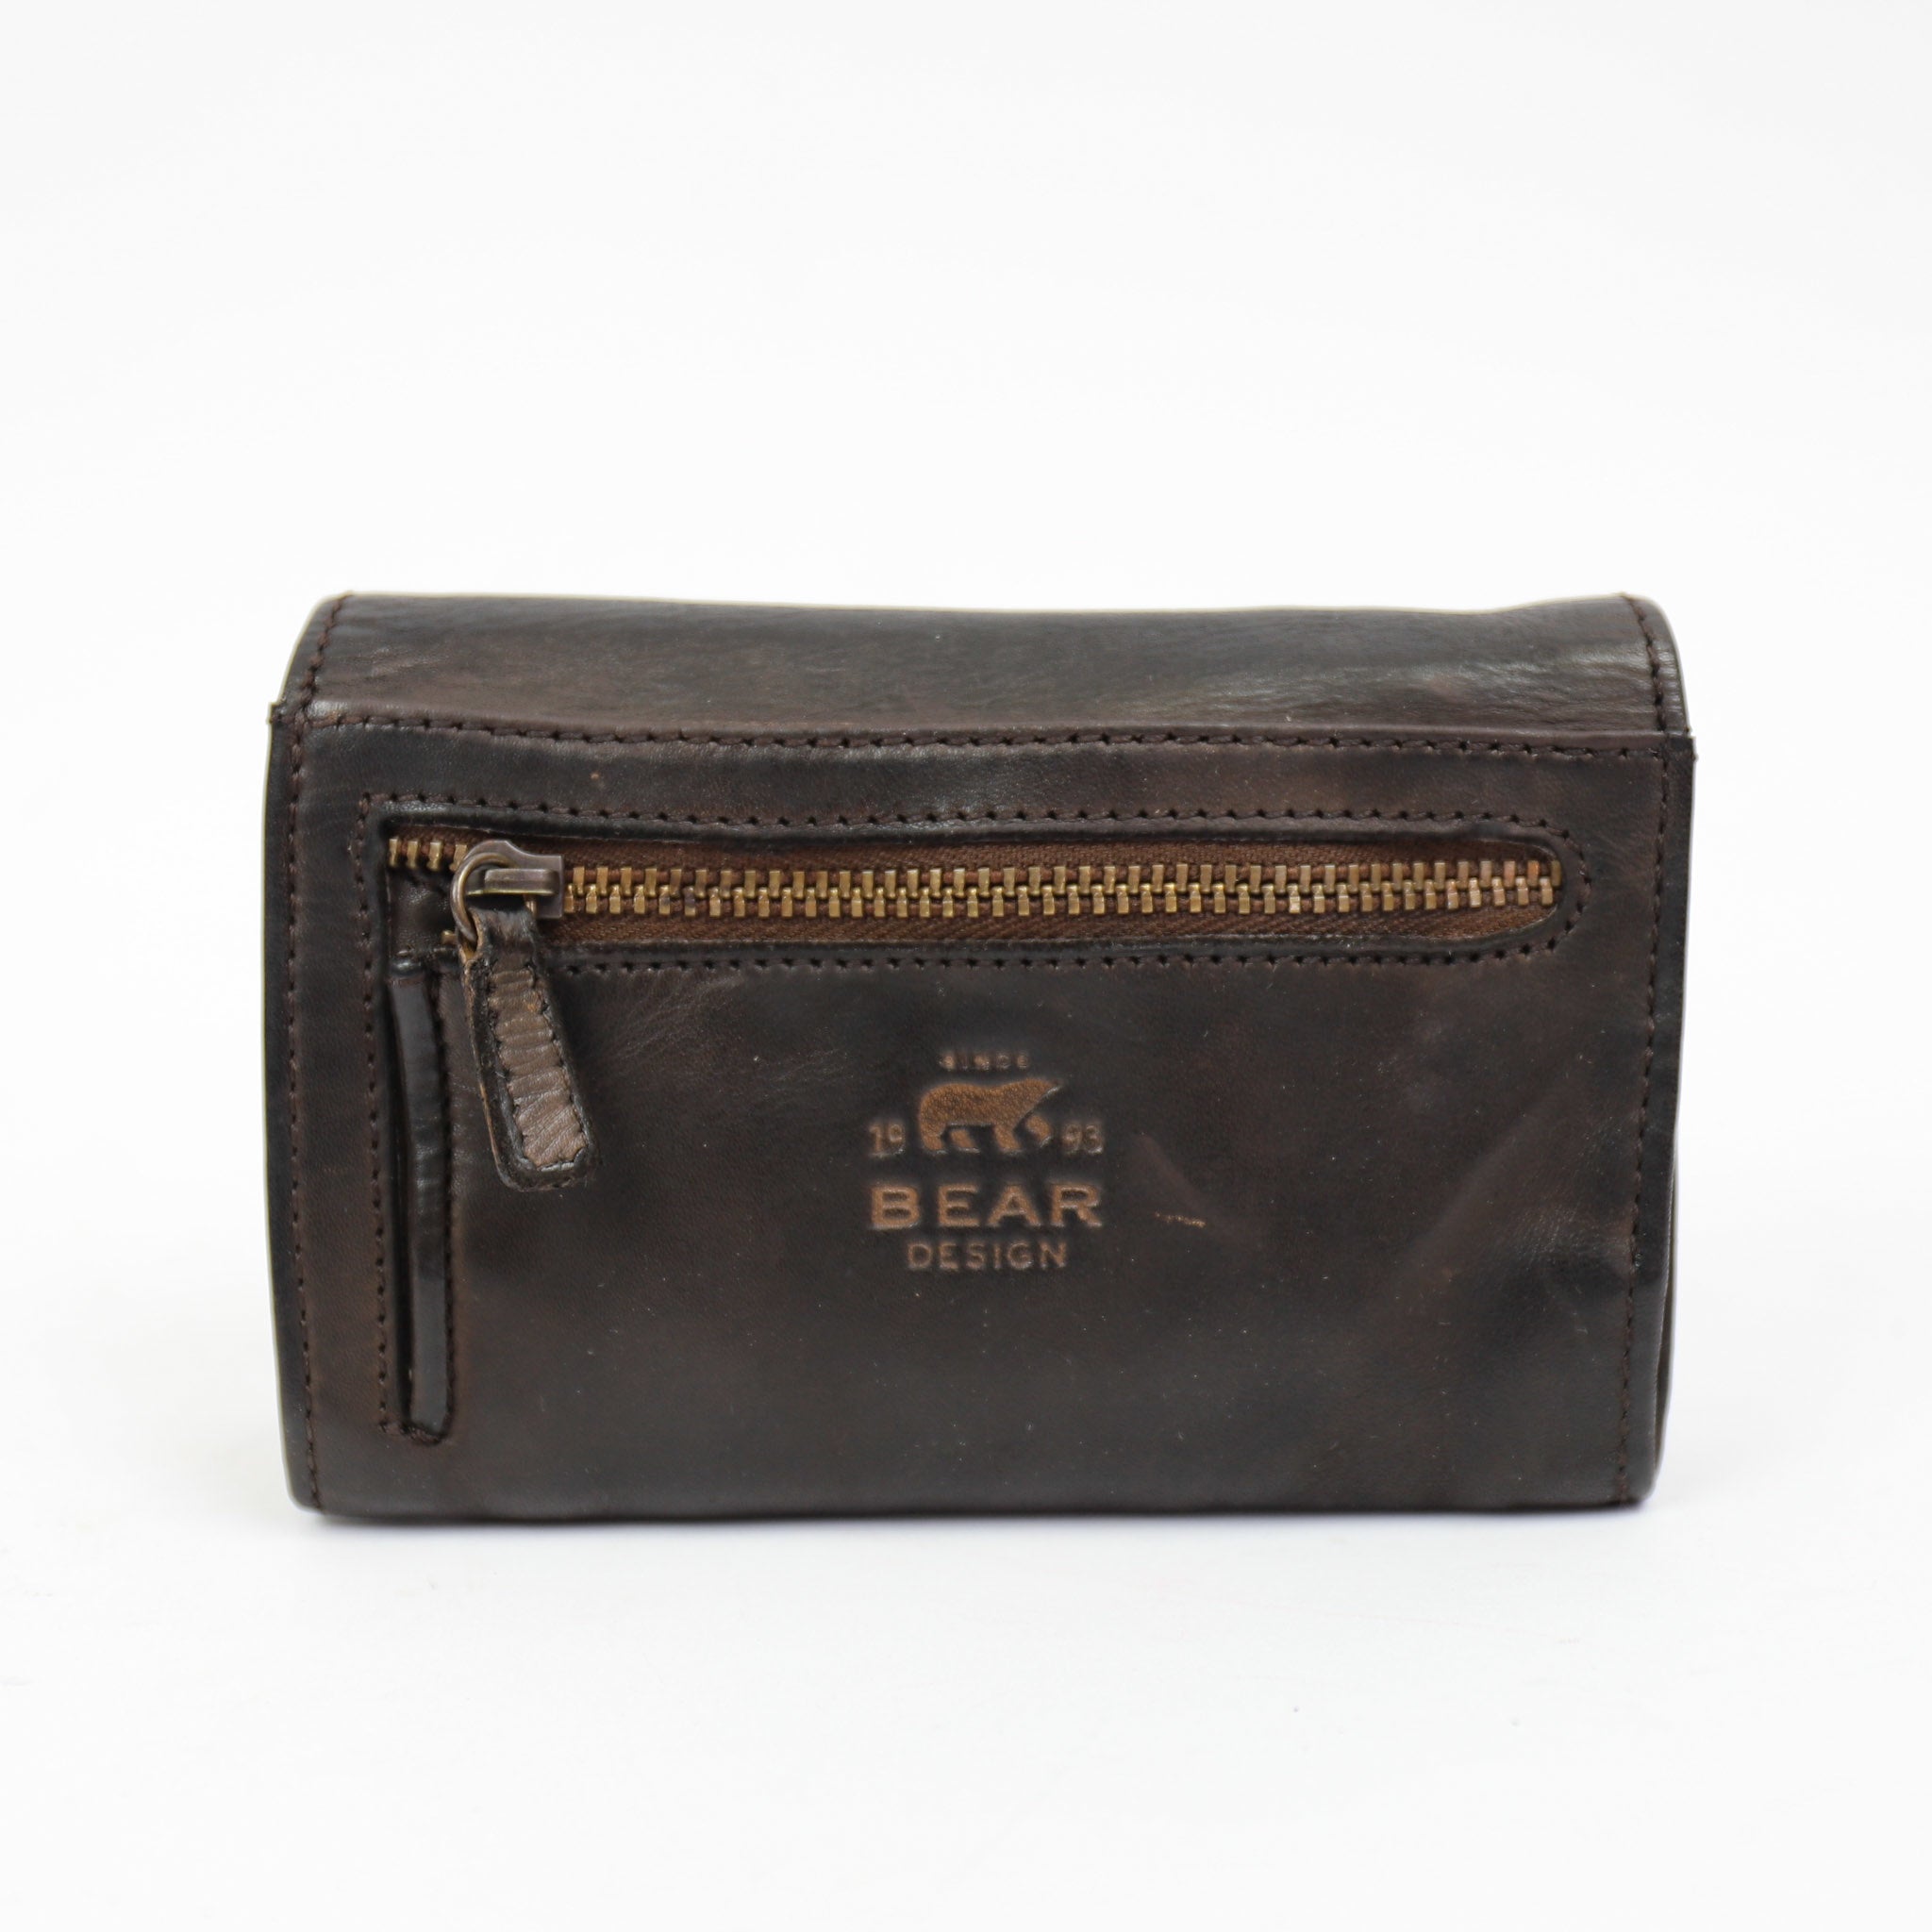 Wrap wallet 'Flappie' dark brown - CL 15572